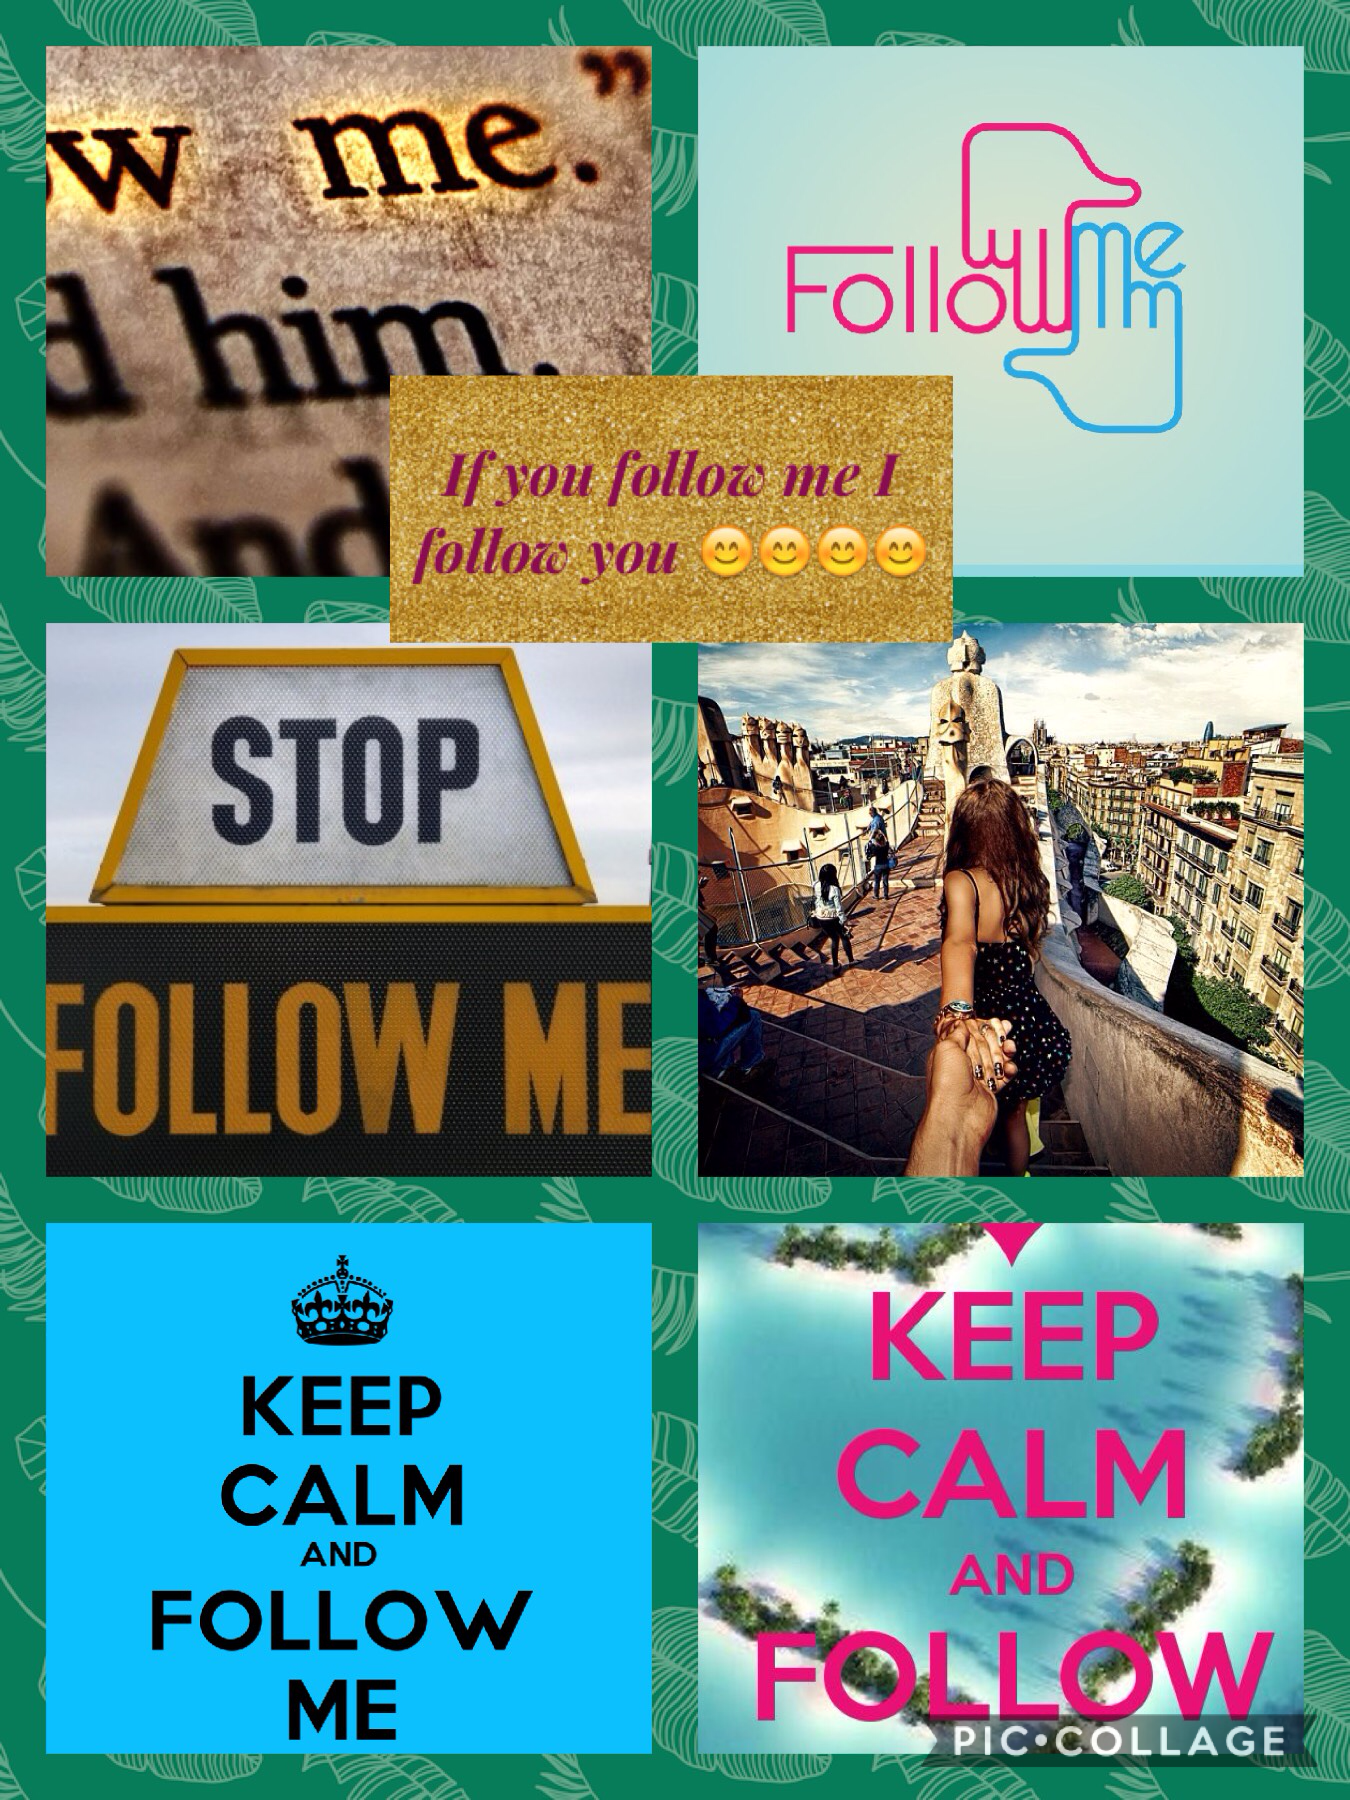 Follow me, I follow you